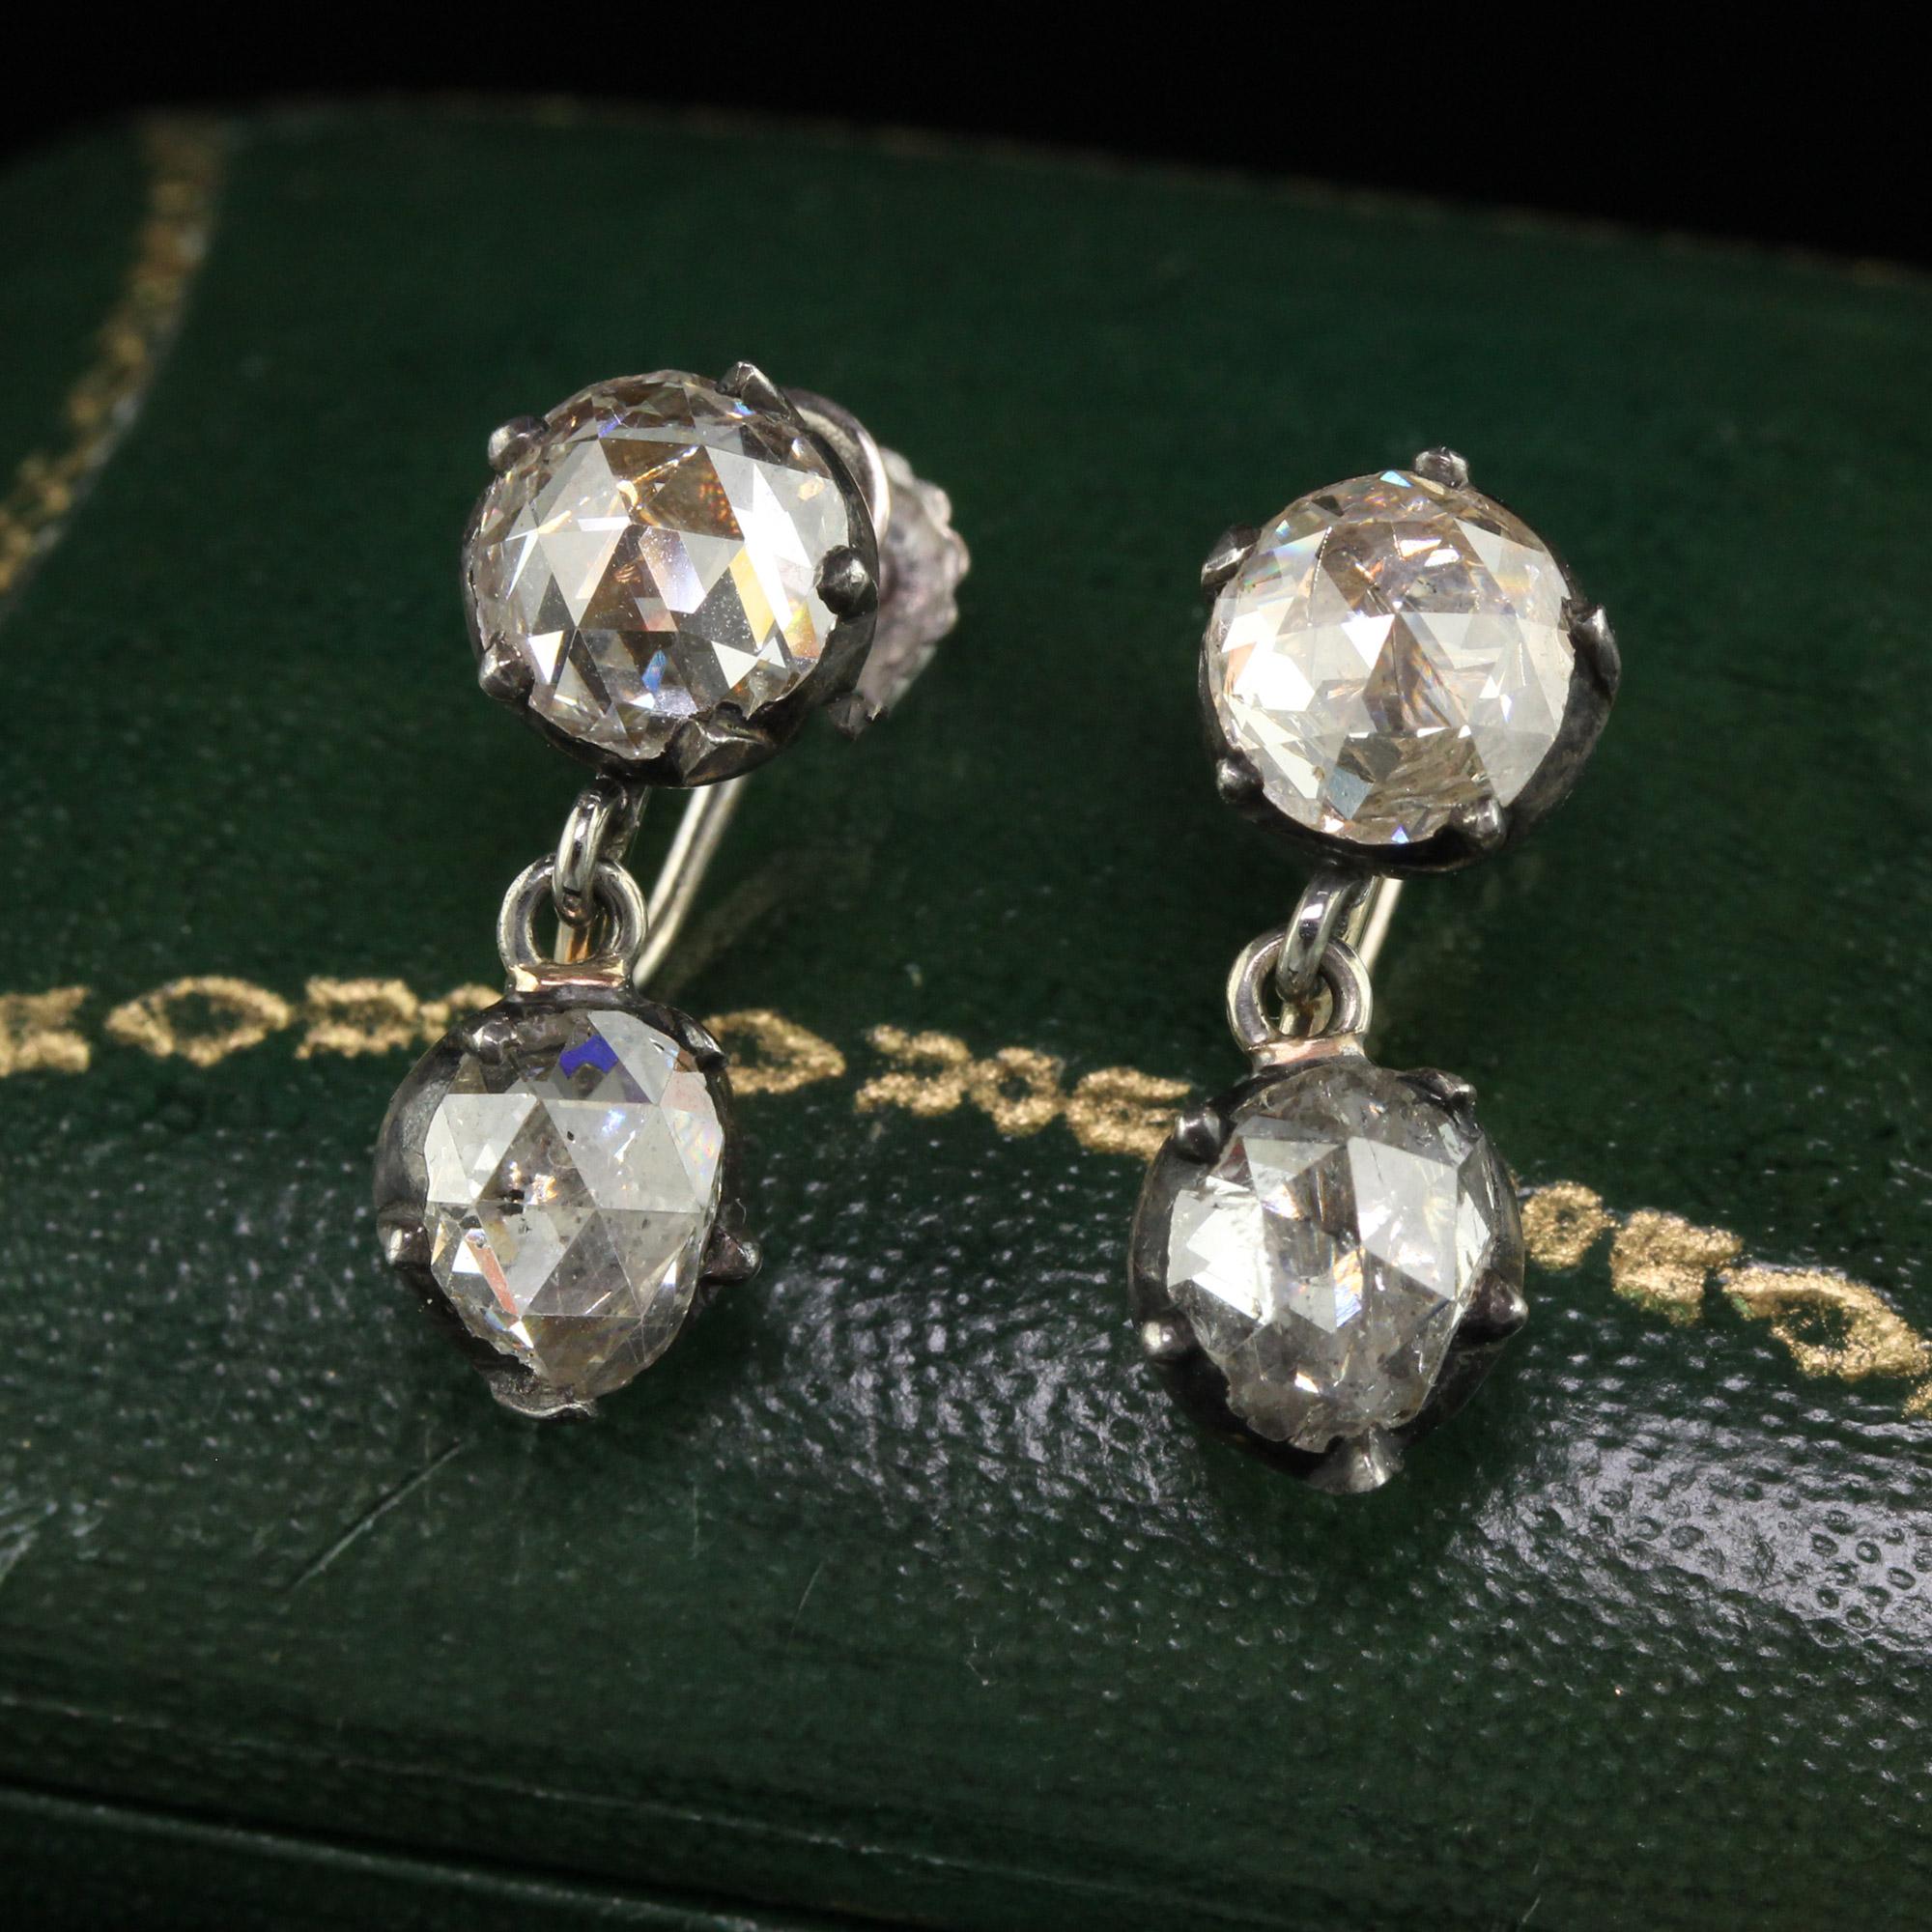 Schöne antike georgische 14K Weißgold Silber Rose Cut Diamond Drop Dangling Earrings. Dieses wunderschöne Paar georgianischer Diamantohrringe ist aus Silber und 14 Karat Weißgold gefertigt. Diese Tropfenohrringe haben oben und unten klobige